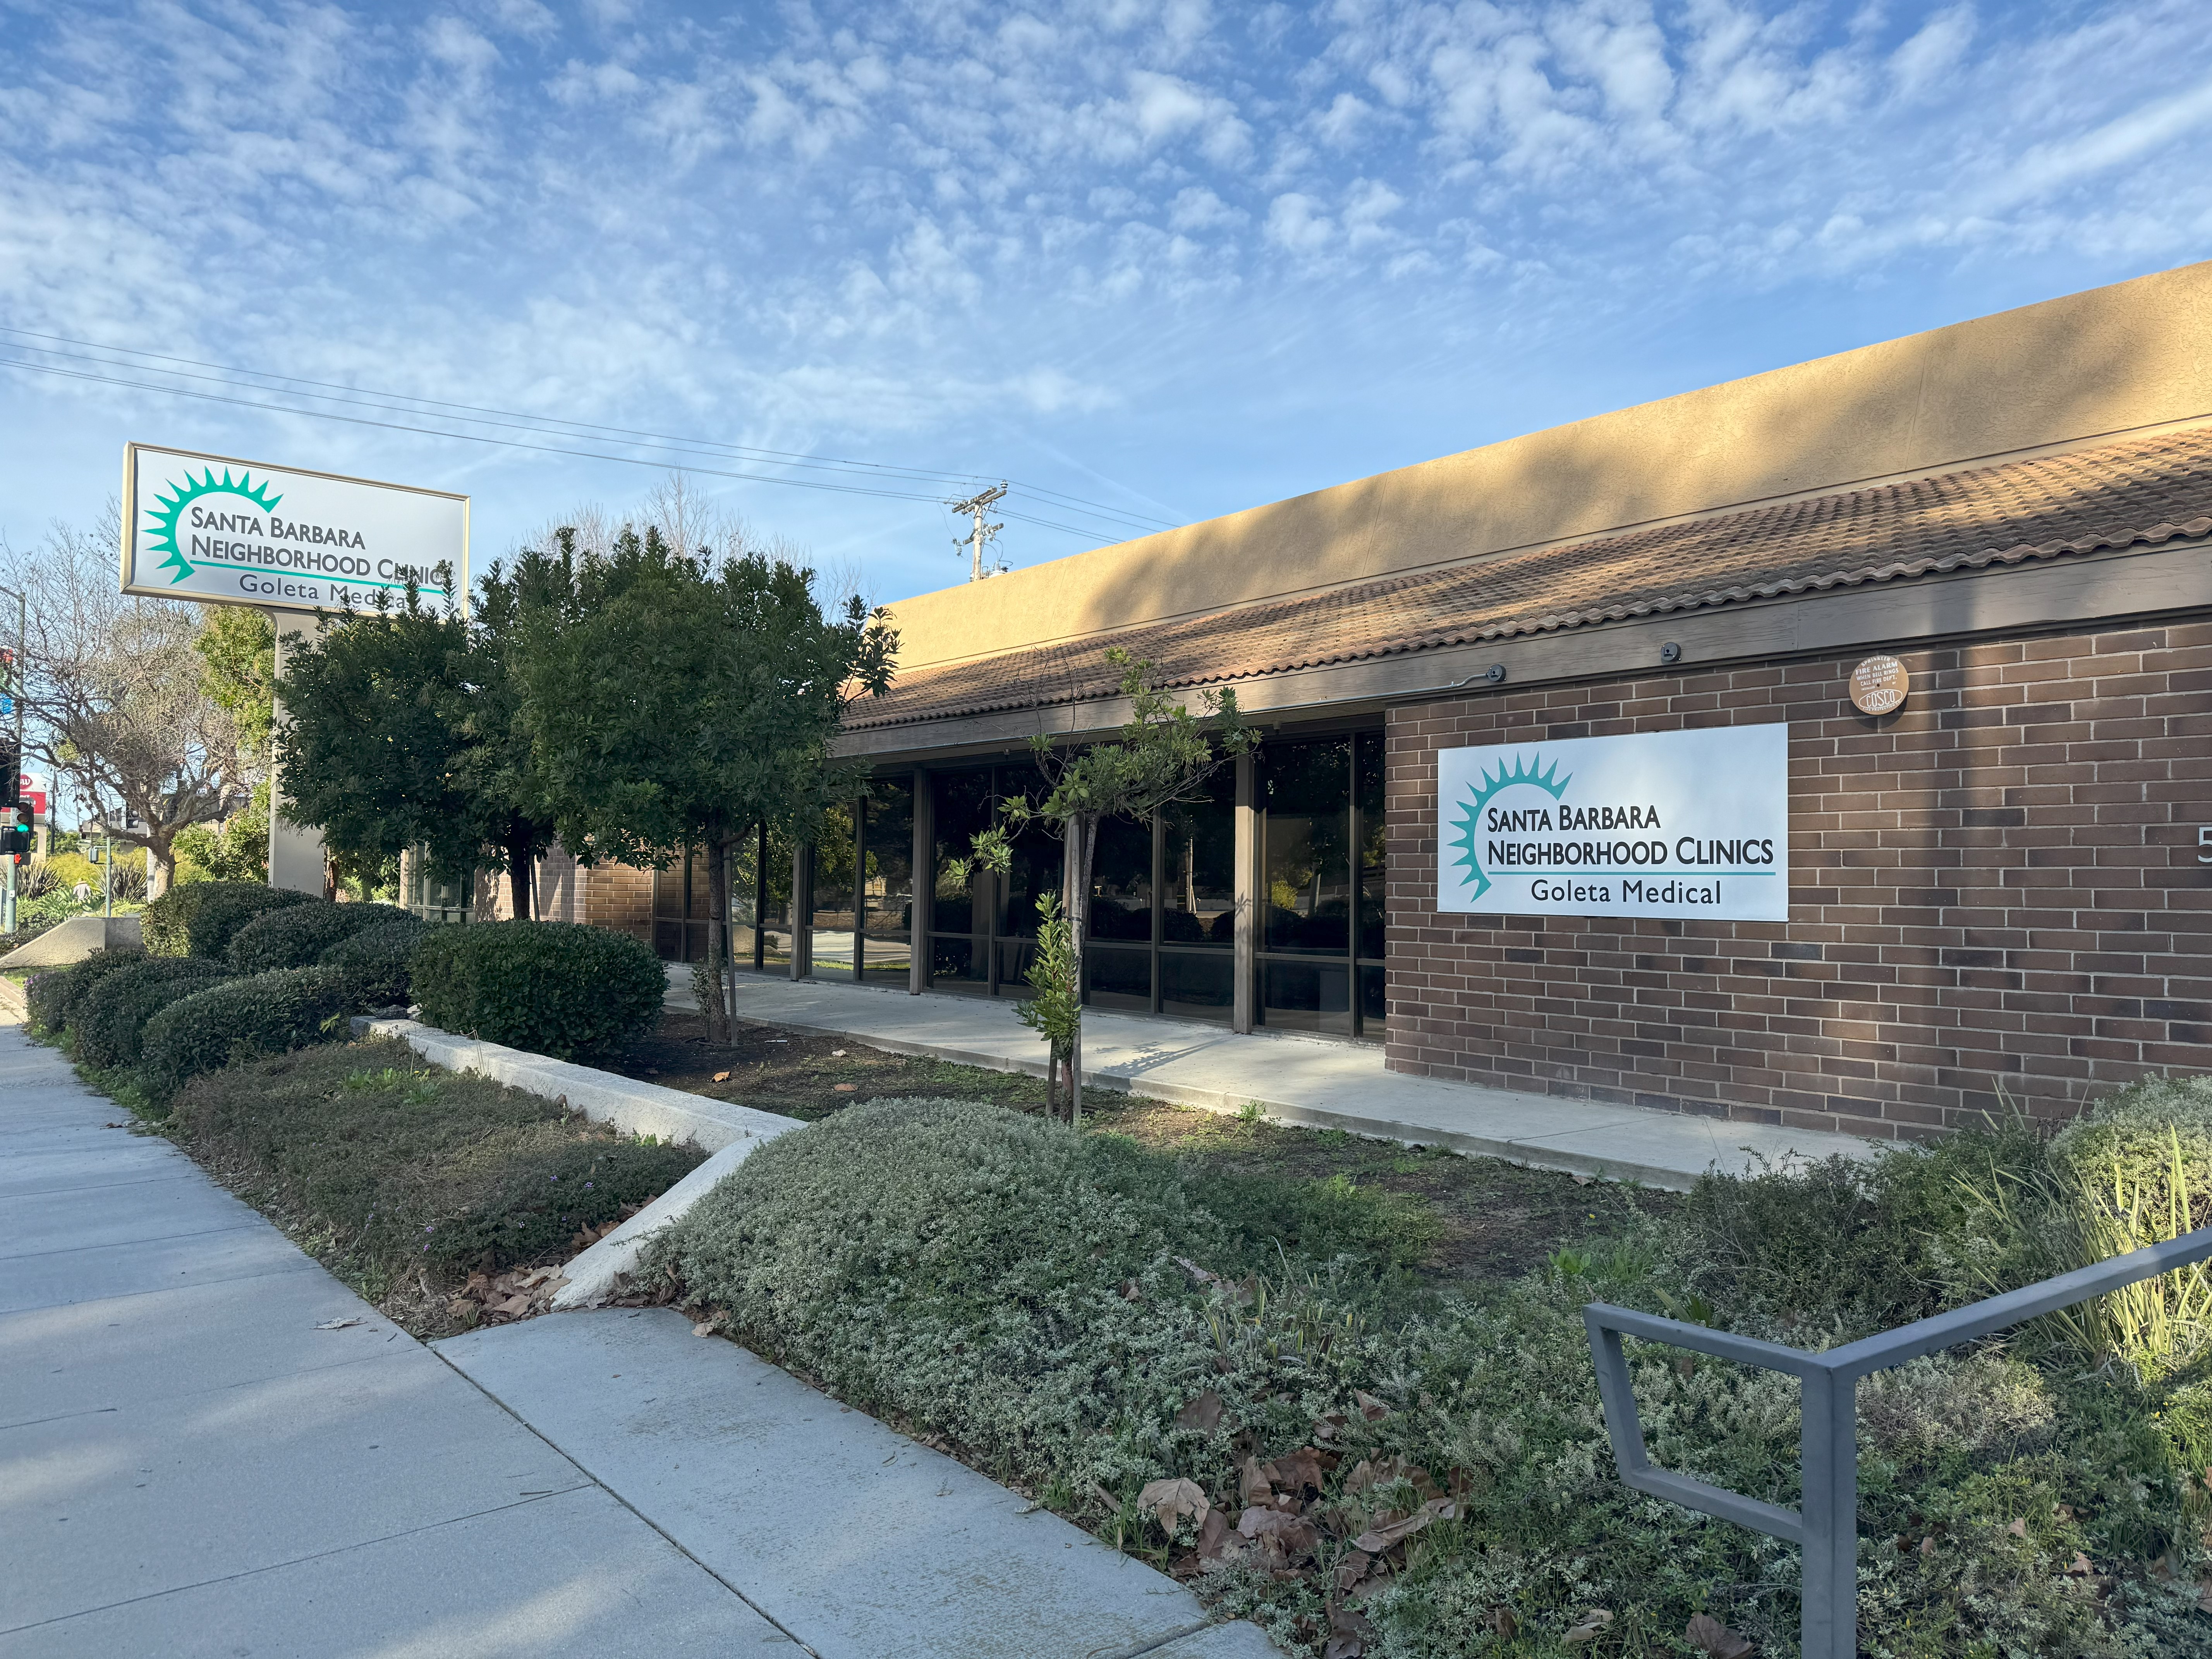 Santa Barbara Neighborhood Clinics